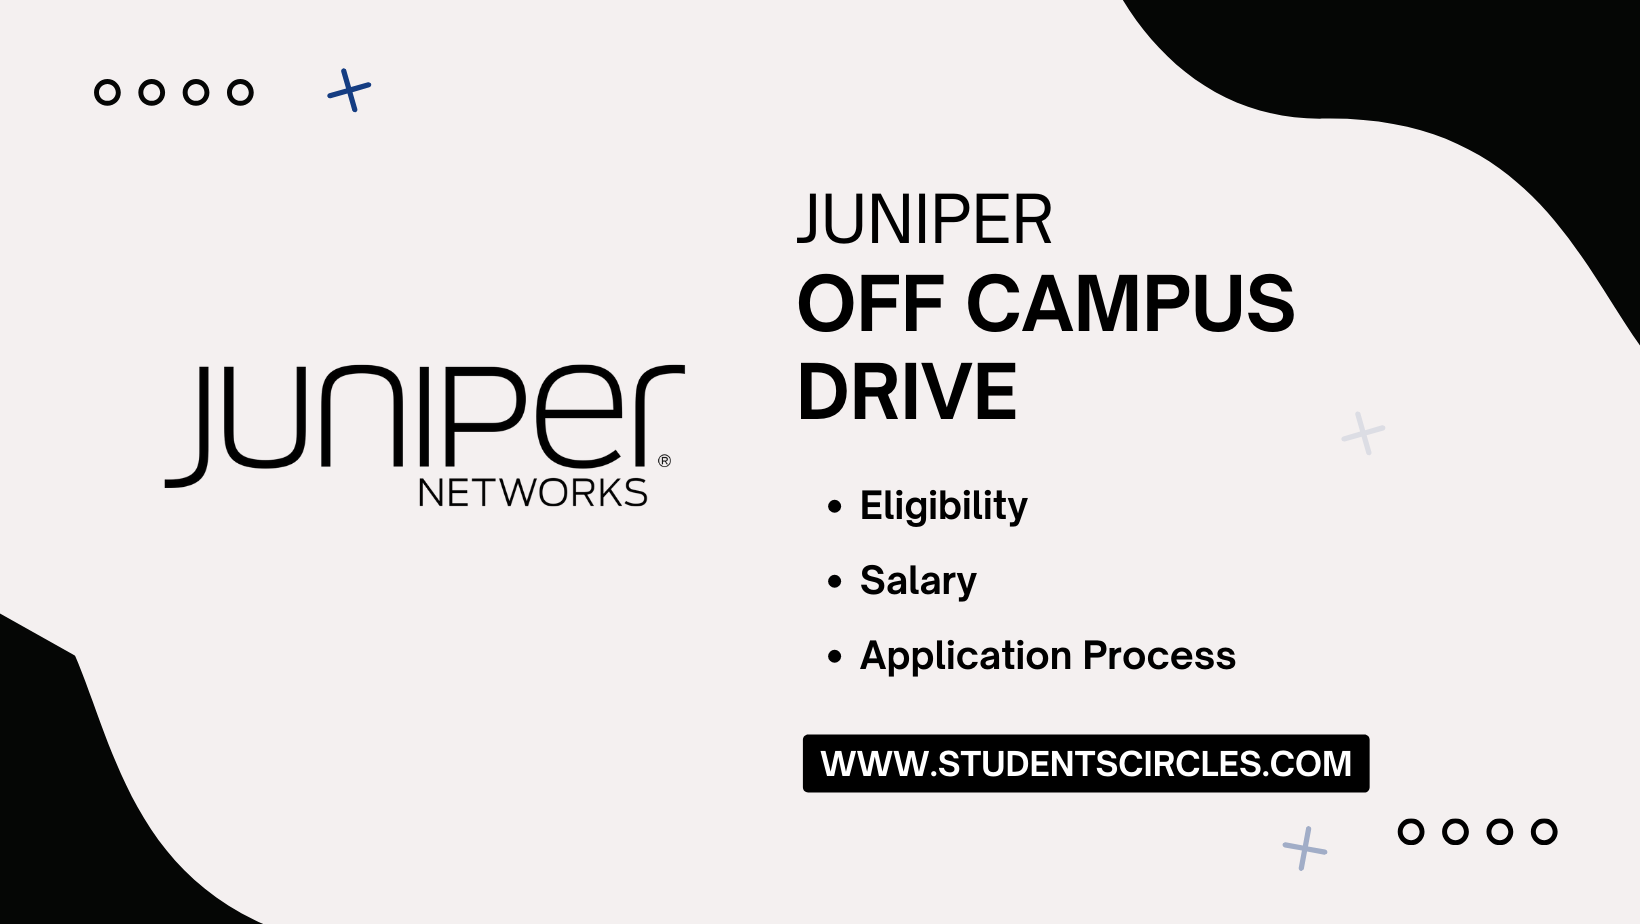 Juniper Networks Off Campus Drive